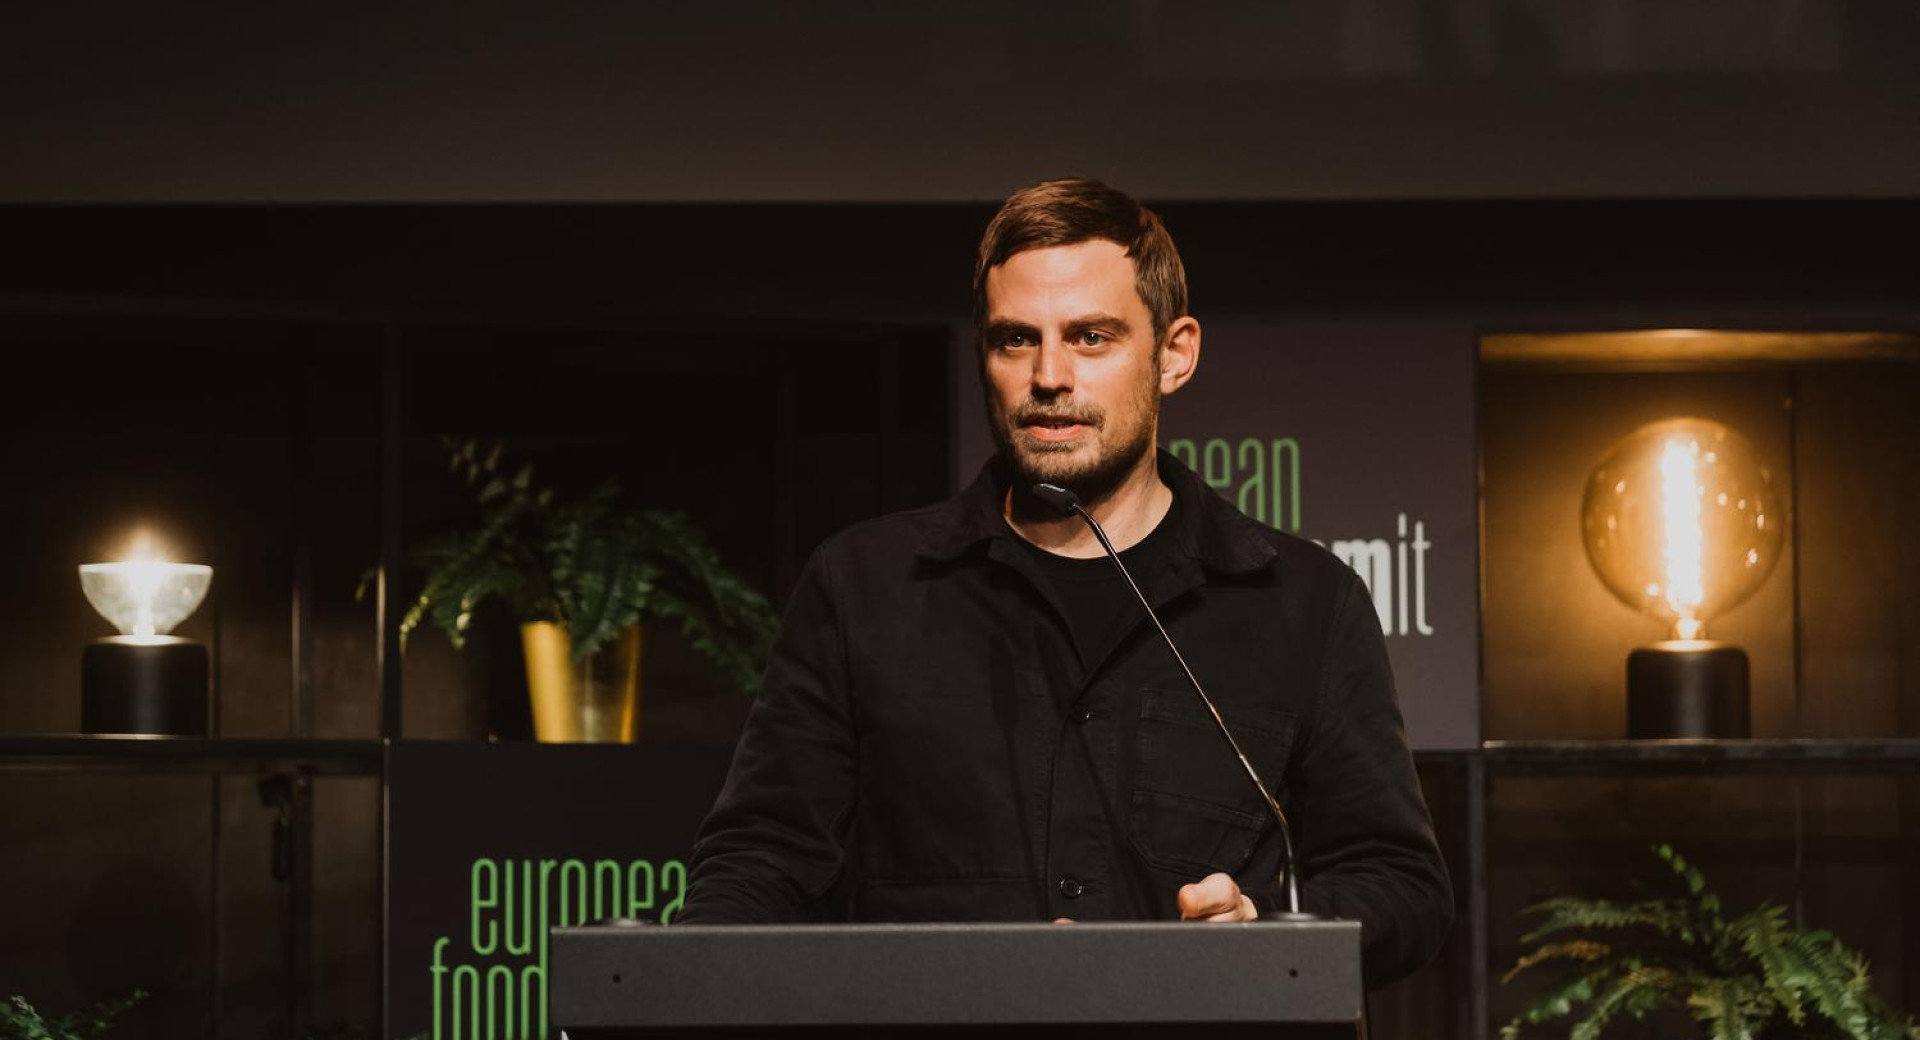 Nicolai Nørregaard, chef danskih restavracij Kadeau, govorec na Evropskem simpoziju hrane 2021